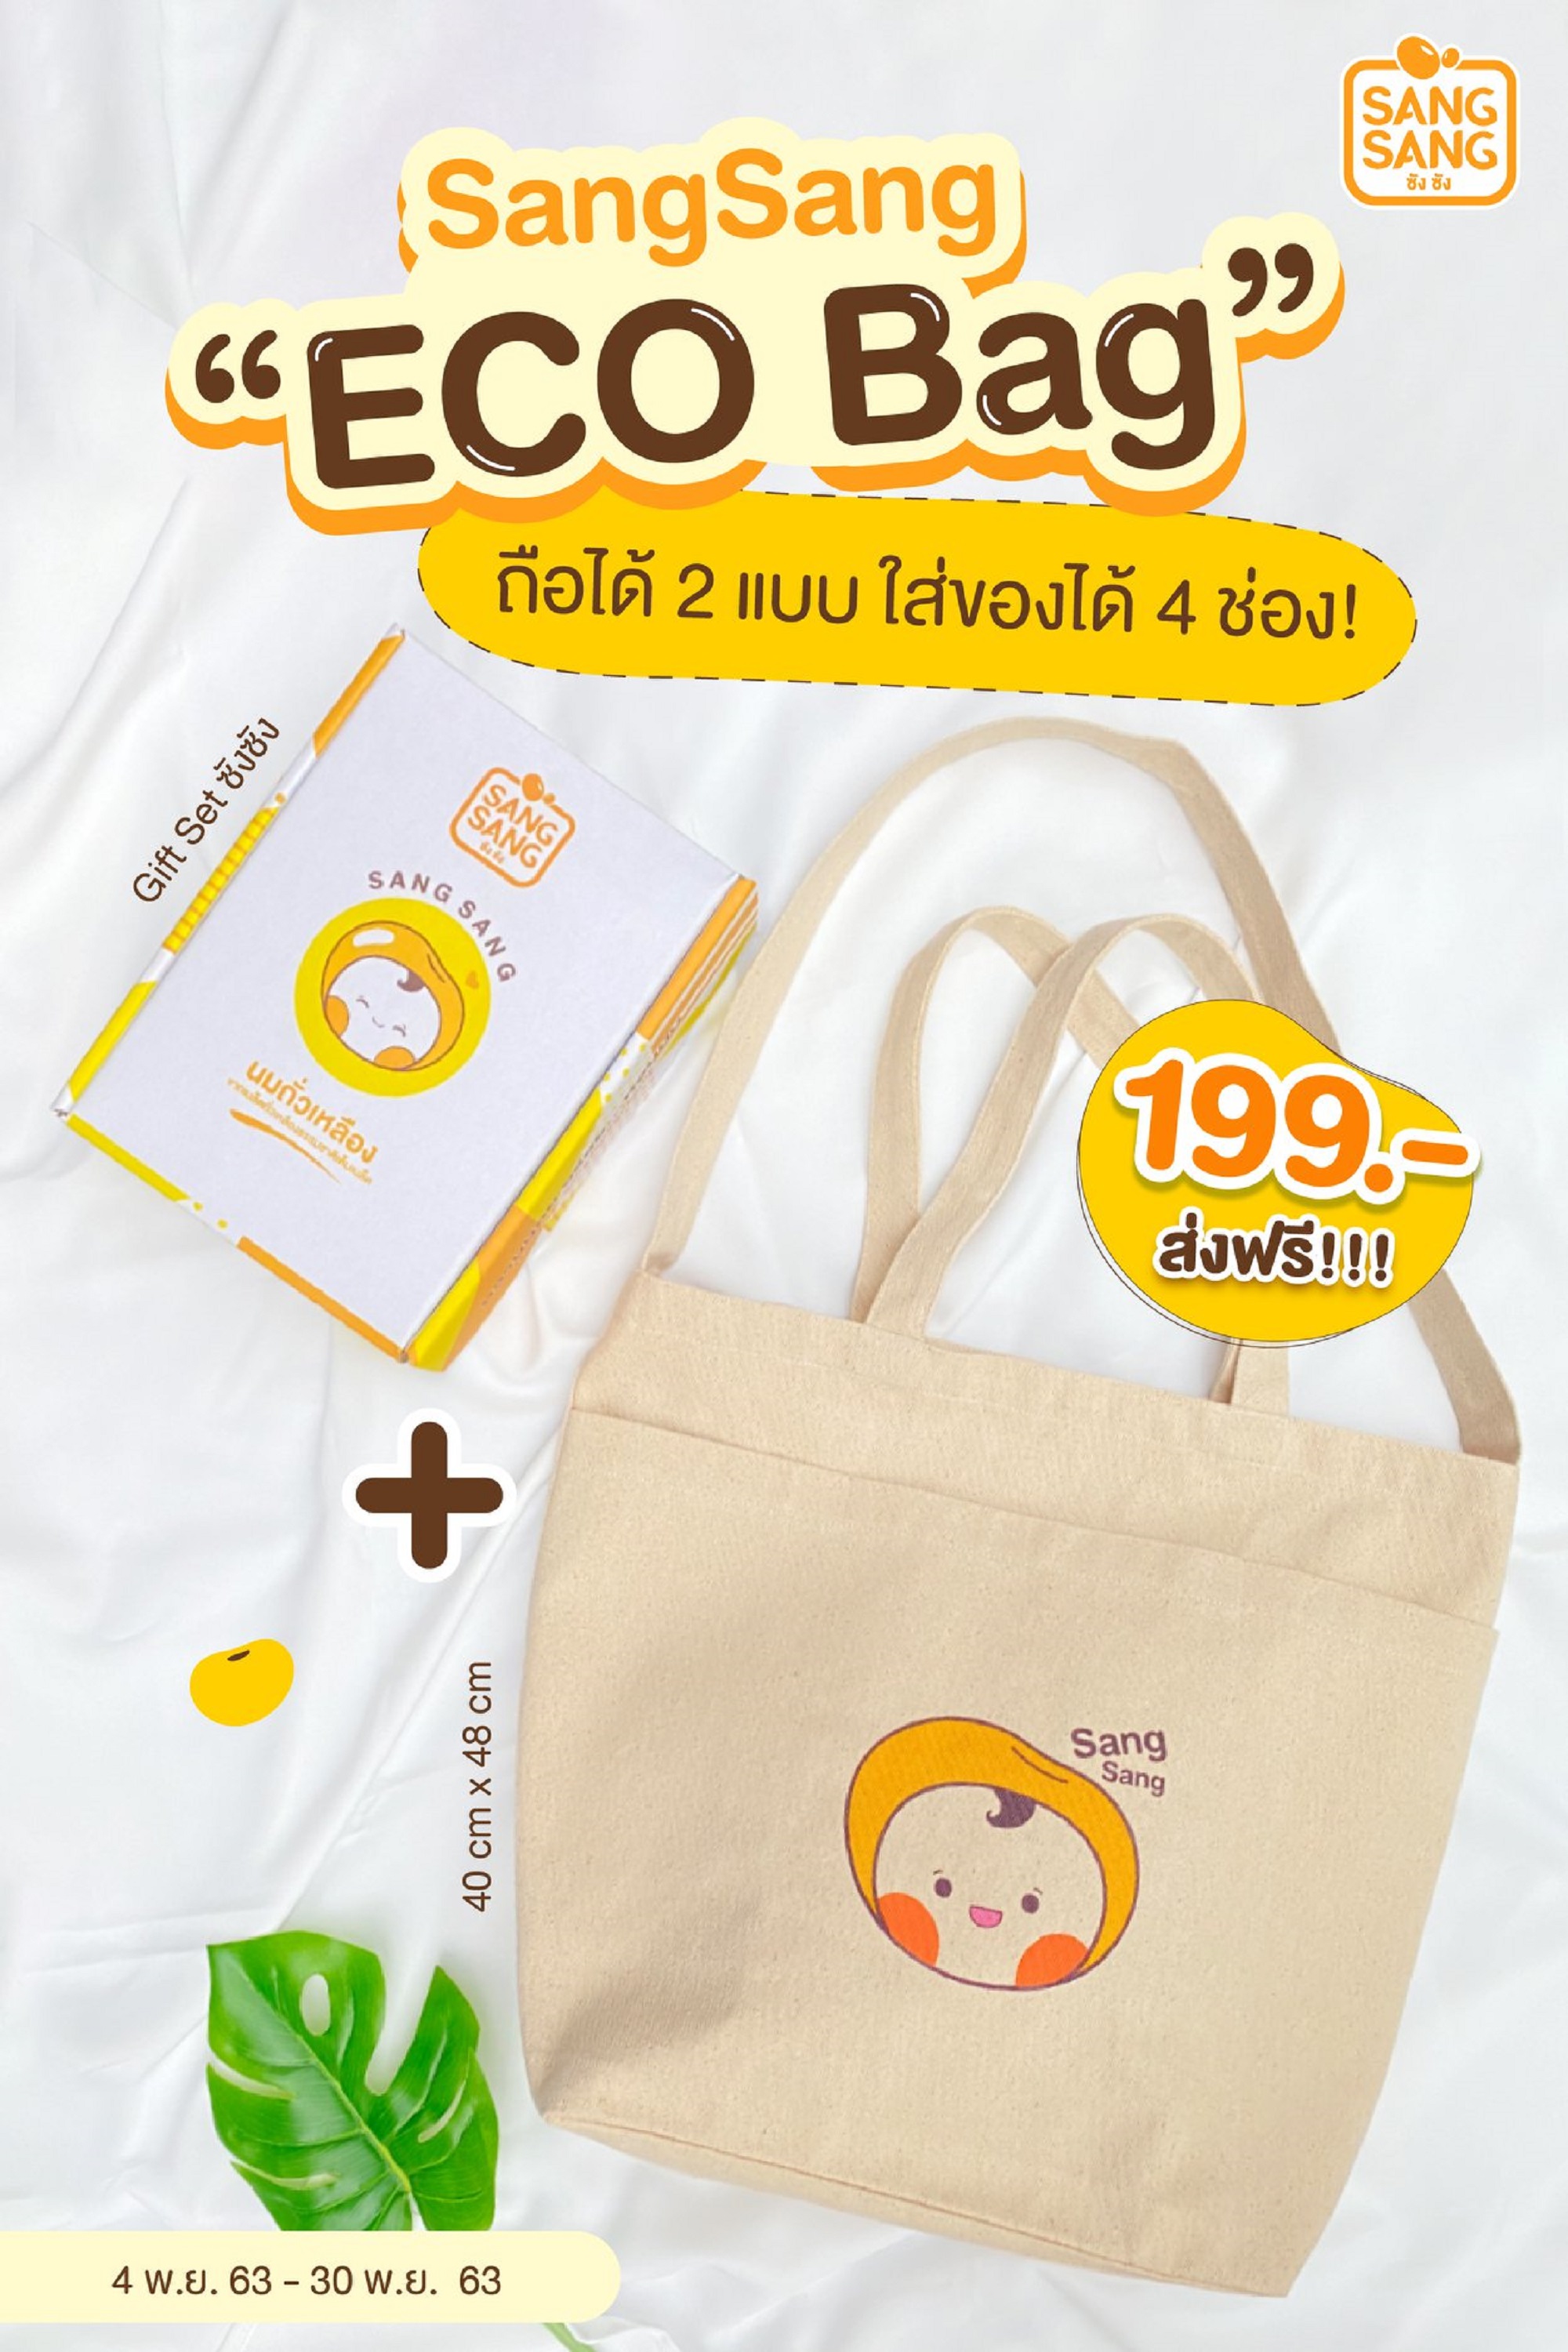 ซังซัง จัดกิ๊ฟท์เซ็ทเอาใจสายวินเทจ มาพร้อมกระเป๋า SANGSANG Eco Bag เซ็ทละ 199 บาท ส่งฟรีถึงบ้าน